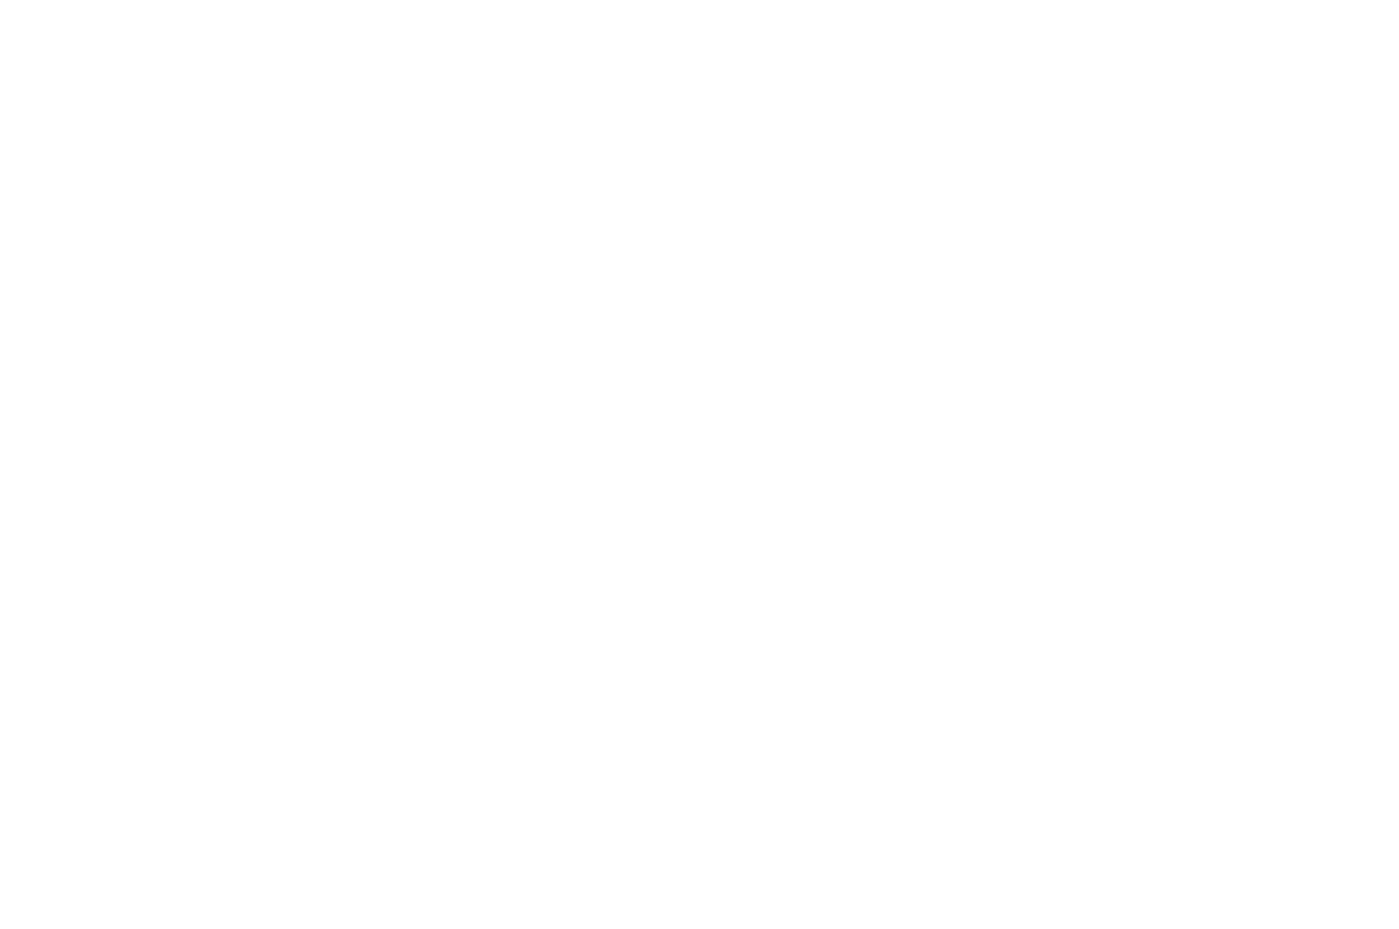 Wayne State University Full Color Block W Logo Car Decal